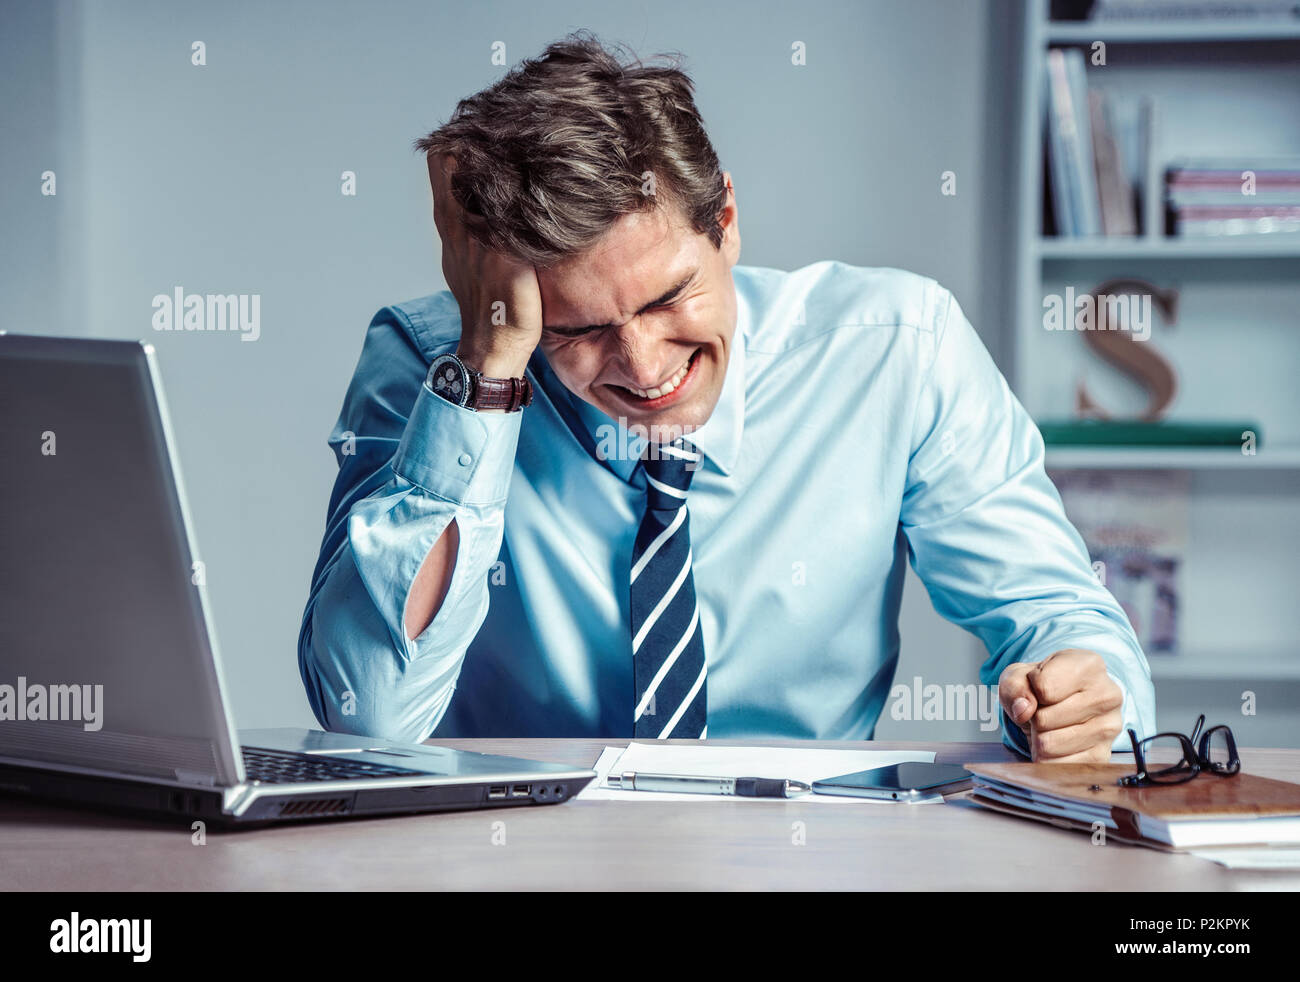 Hombre llorando. Trabajador insatisfecho de sus ingresos. Foto de joven trabajando en la oficina. Concepto de negocio Foto de stock